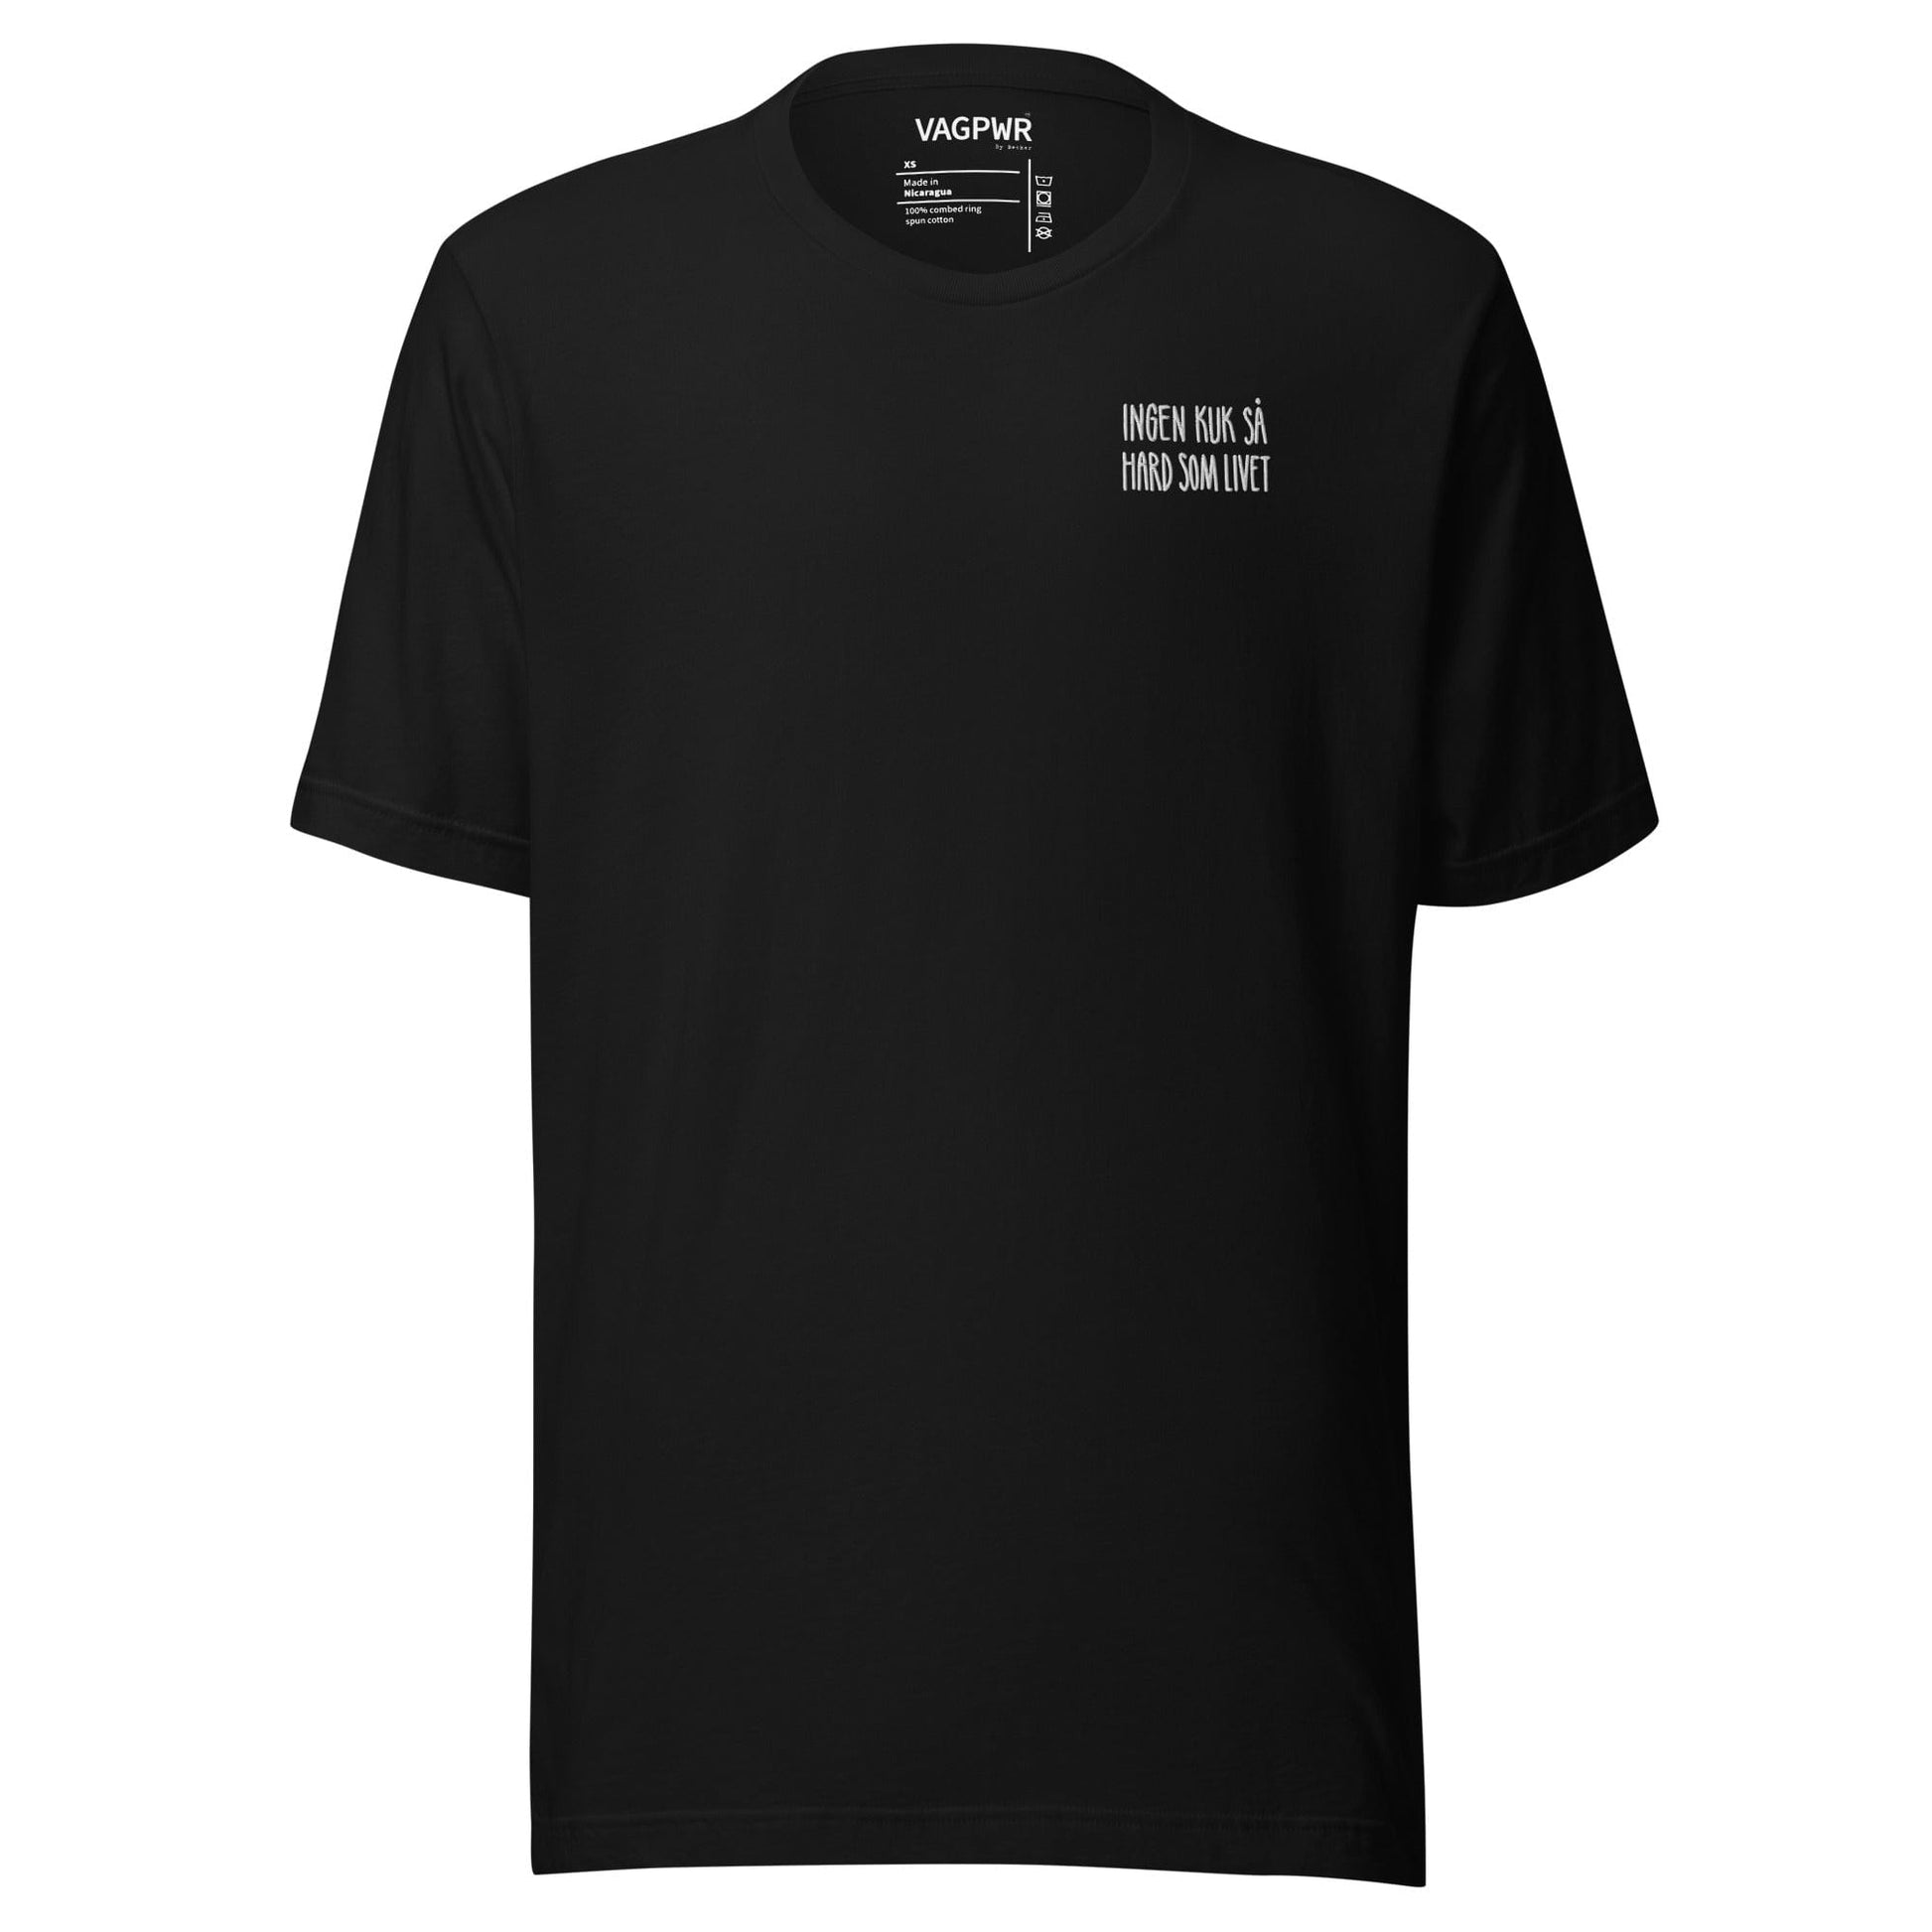 VAGPWR Hard life - Unisex t-shirt - Black